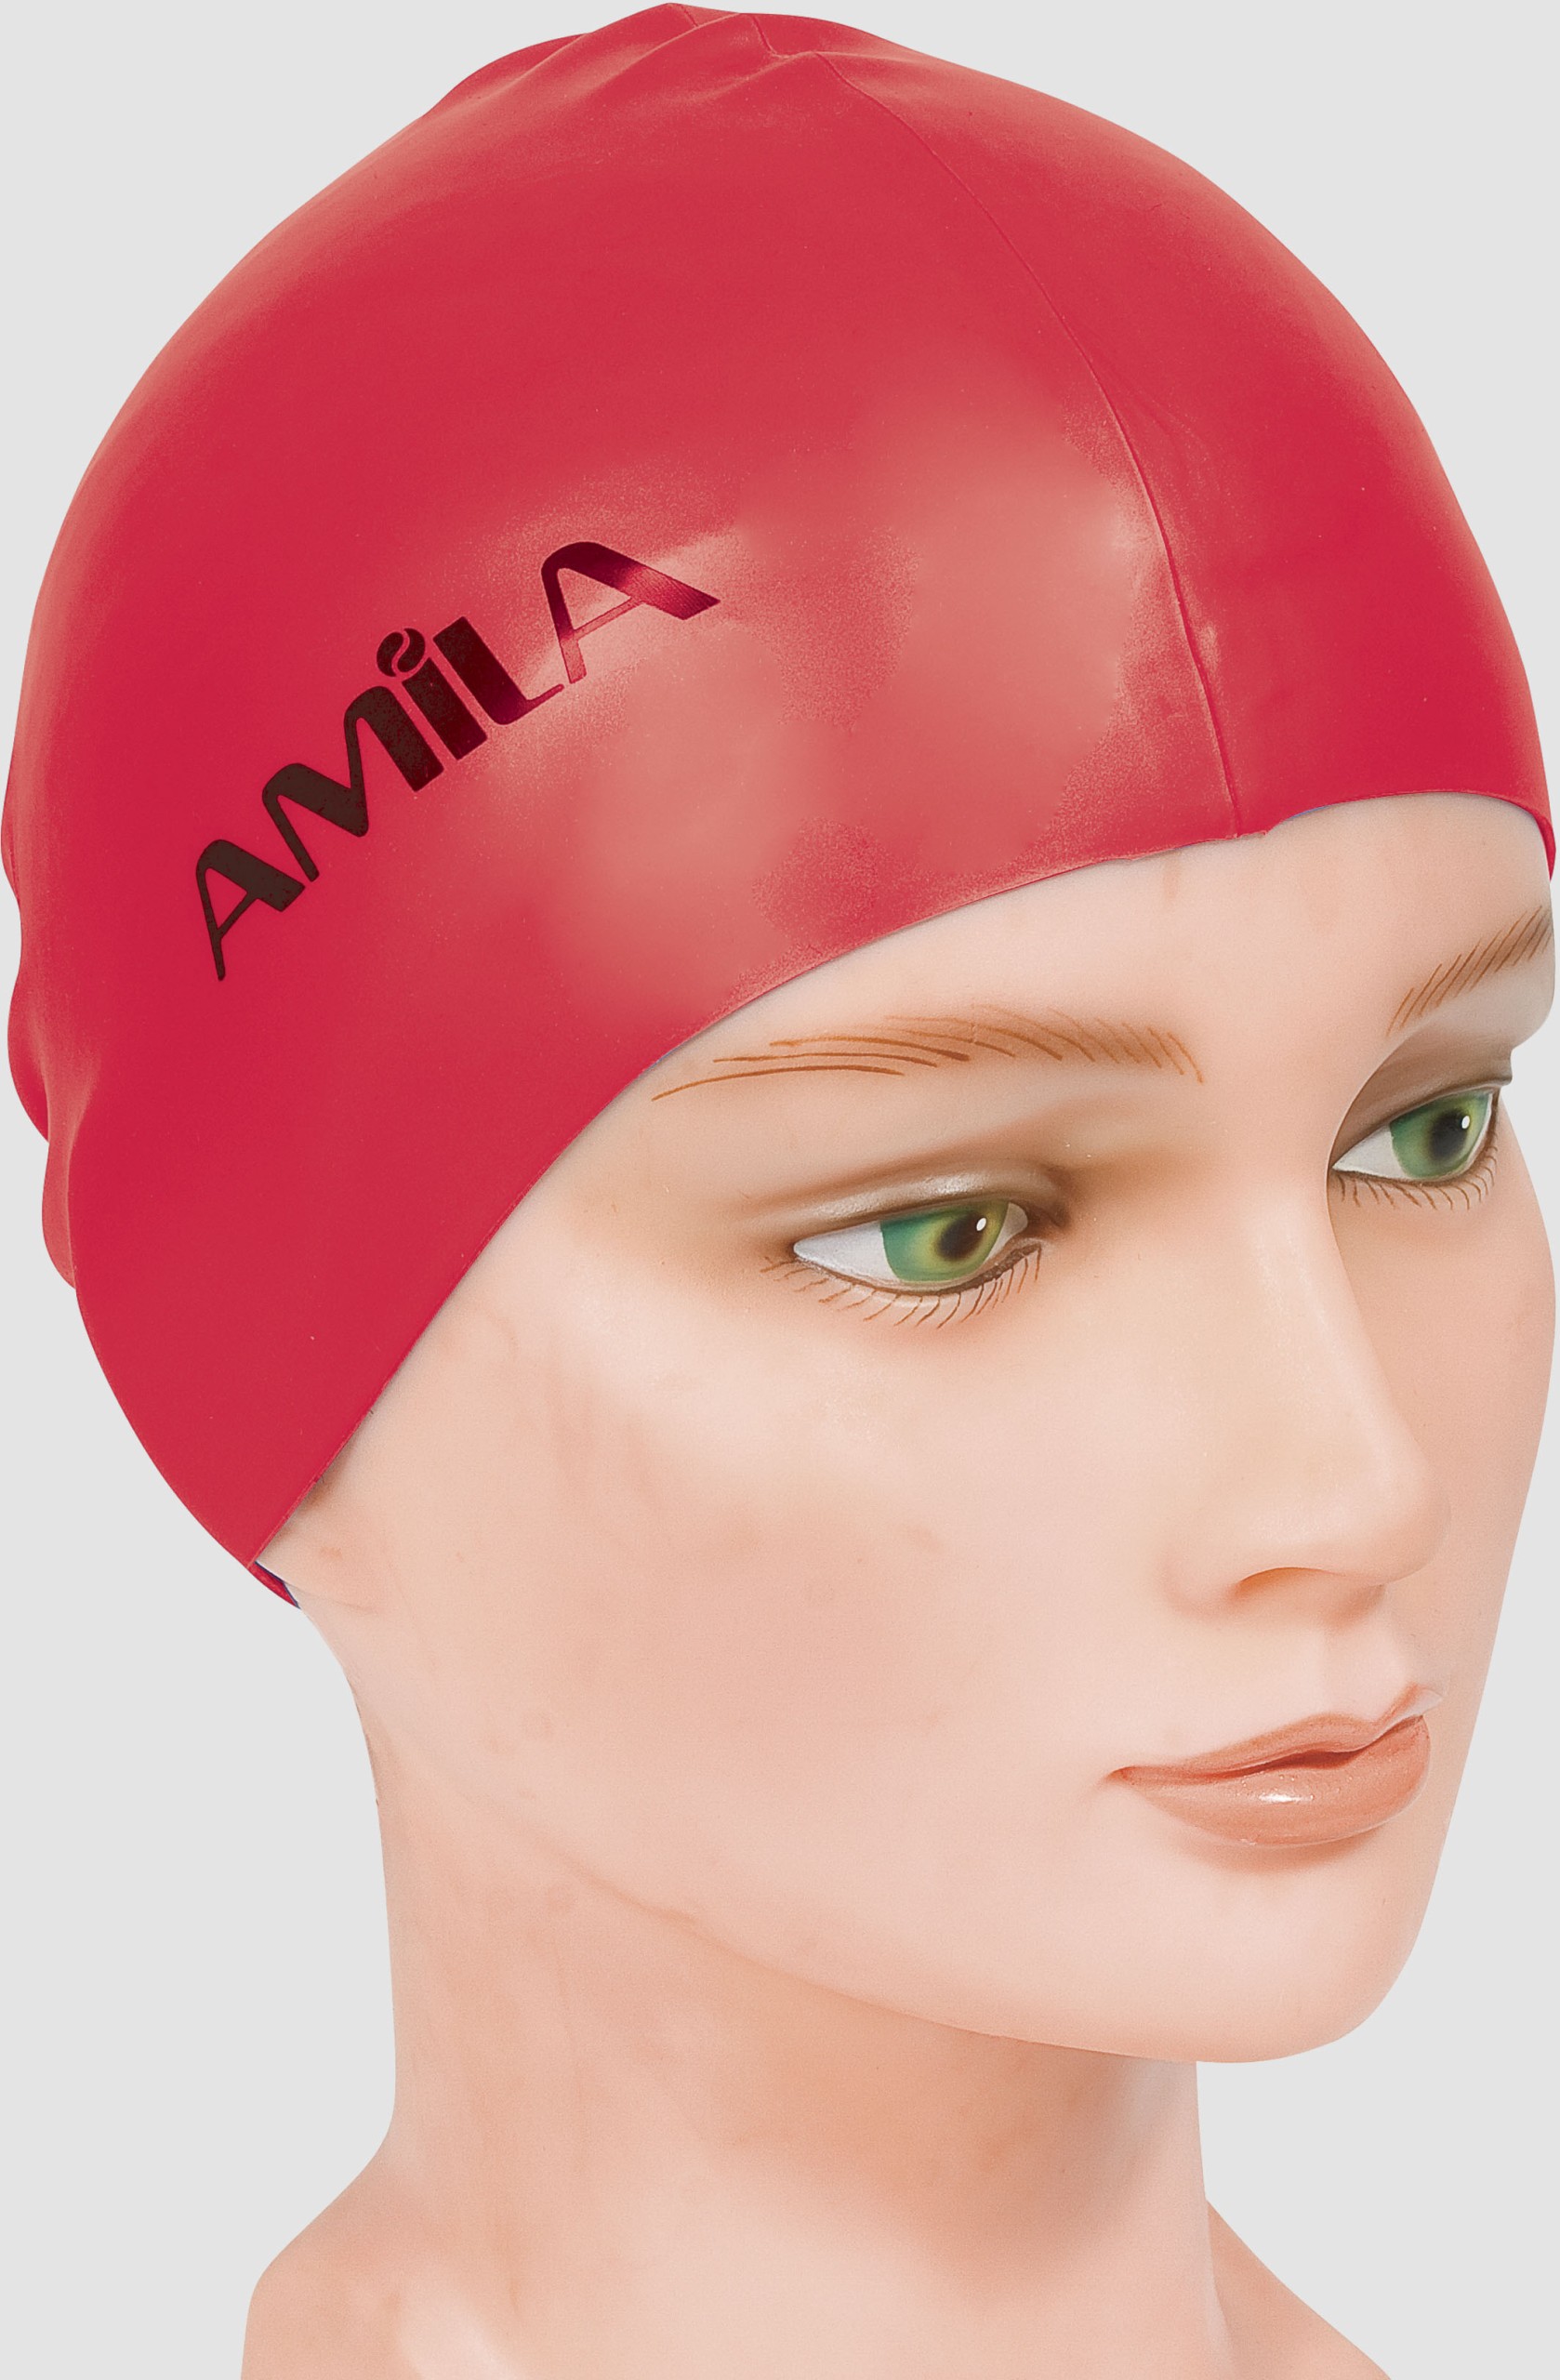 Σκουφάκι Κολύμβησης AMILA Basic Κόκκινο